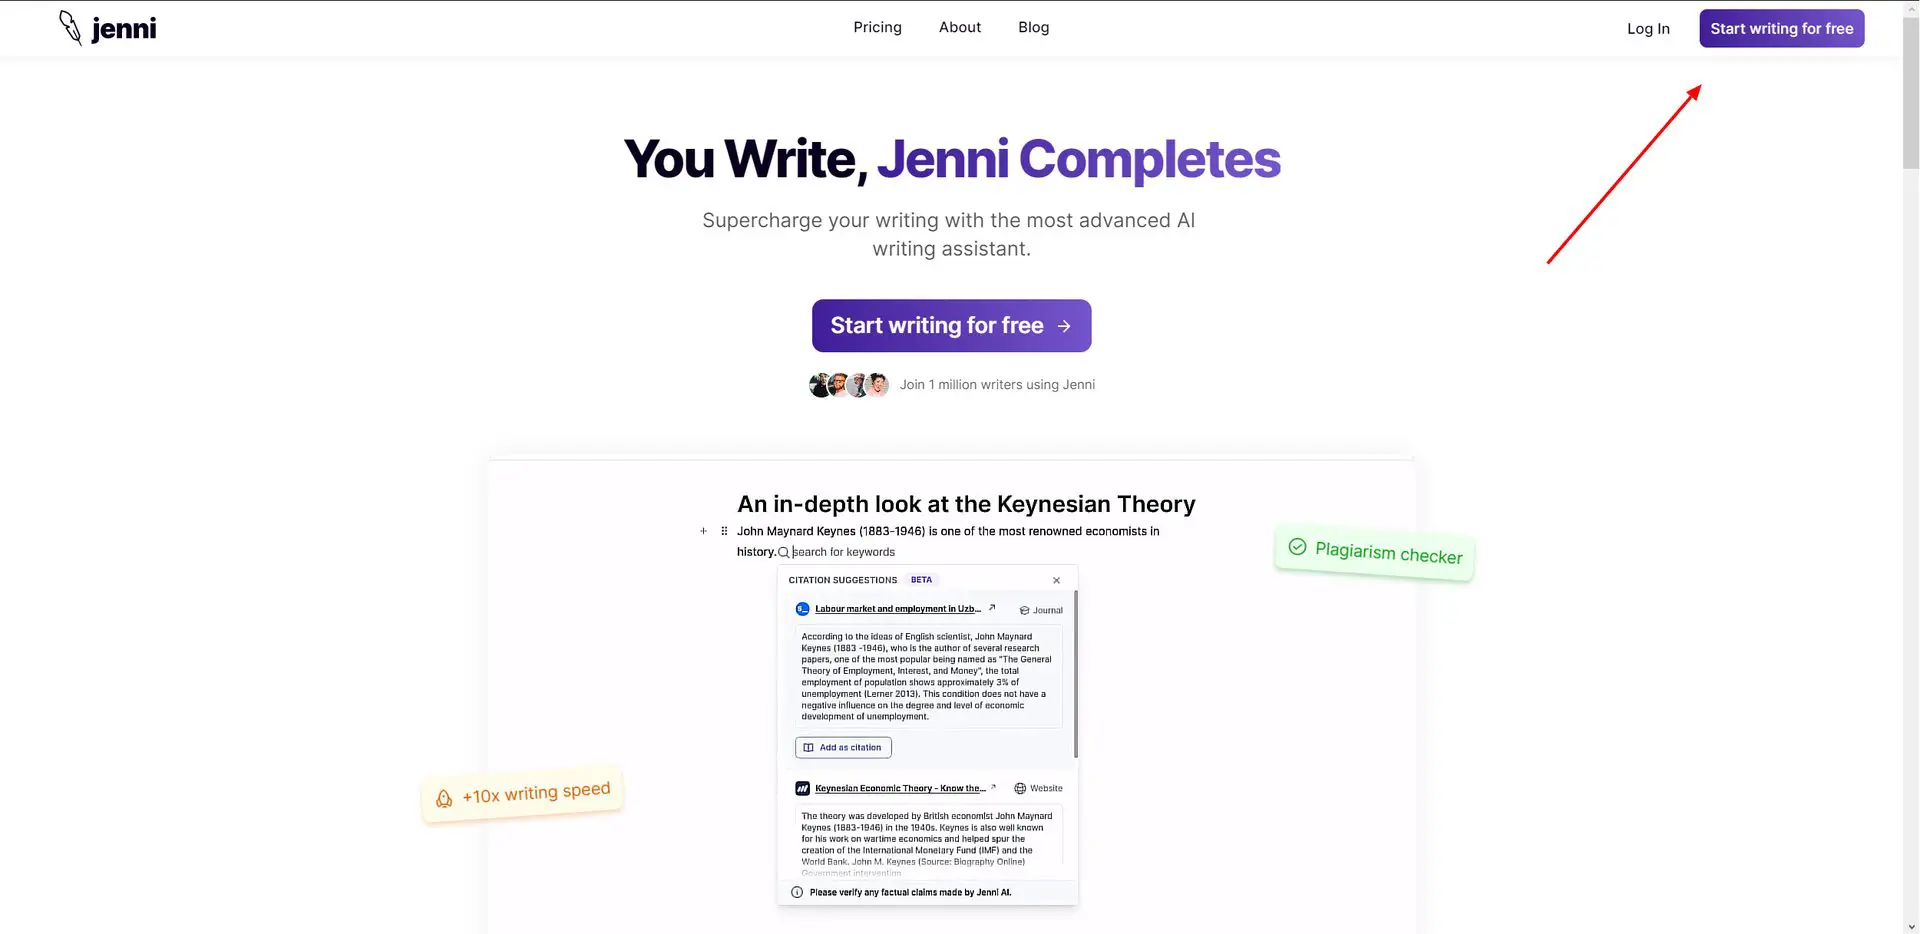 ¿Qué es Jenni AI y cómo usarlo? ¡Aprenda sus características con ejemplos y descubra alternativas gratuitas de Jenni AI si no quiere pagar! Sigue leyendo...